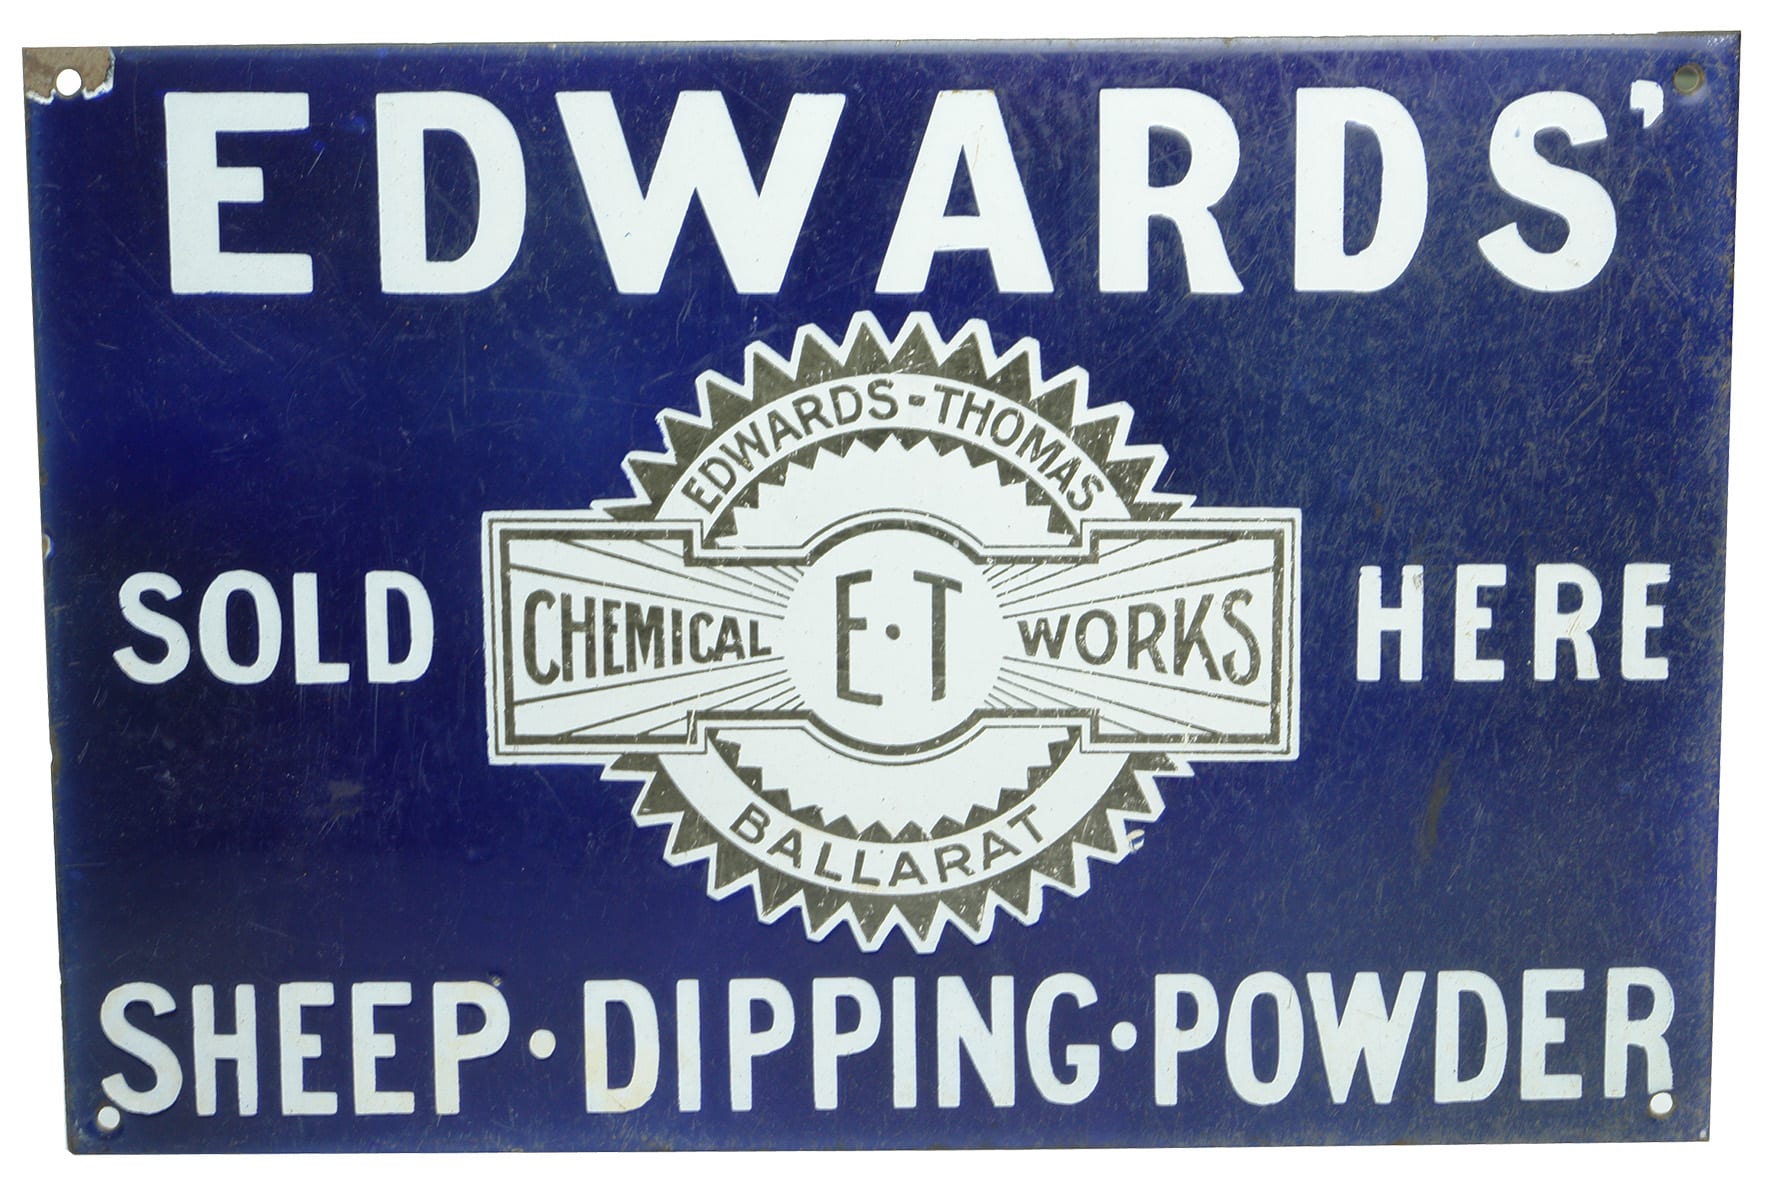 Edwards' Sheep Dipping Powder Ballarat Enamel Sign